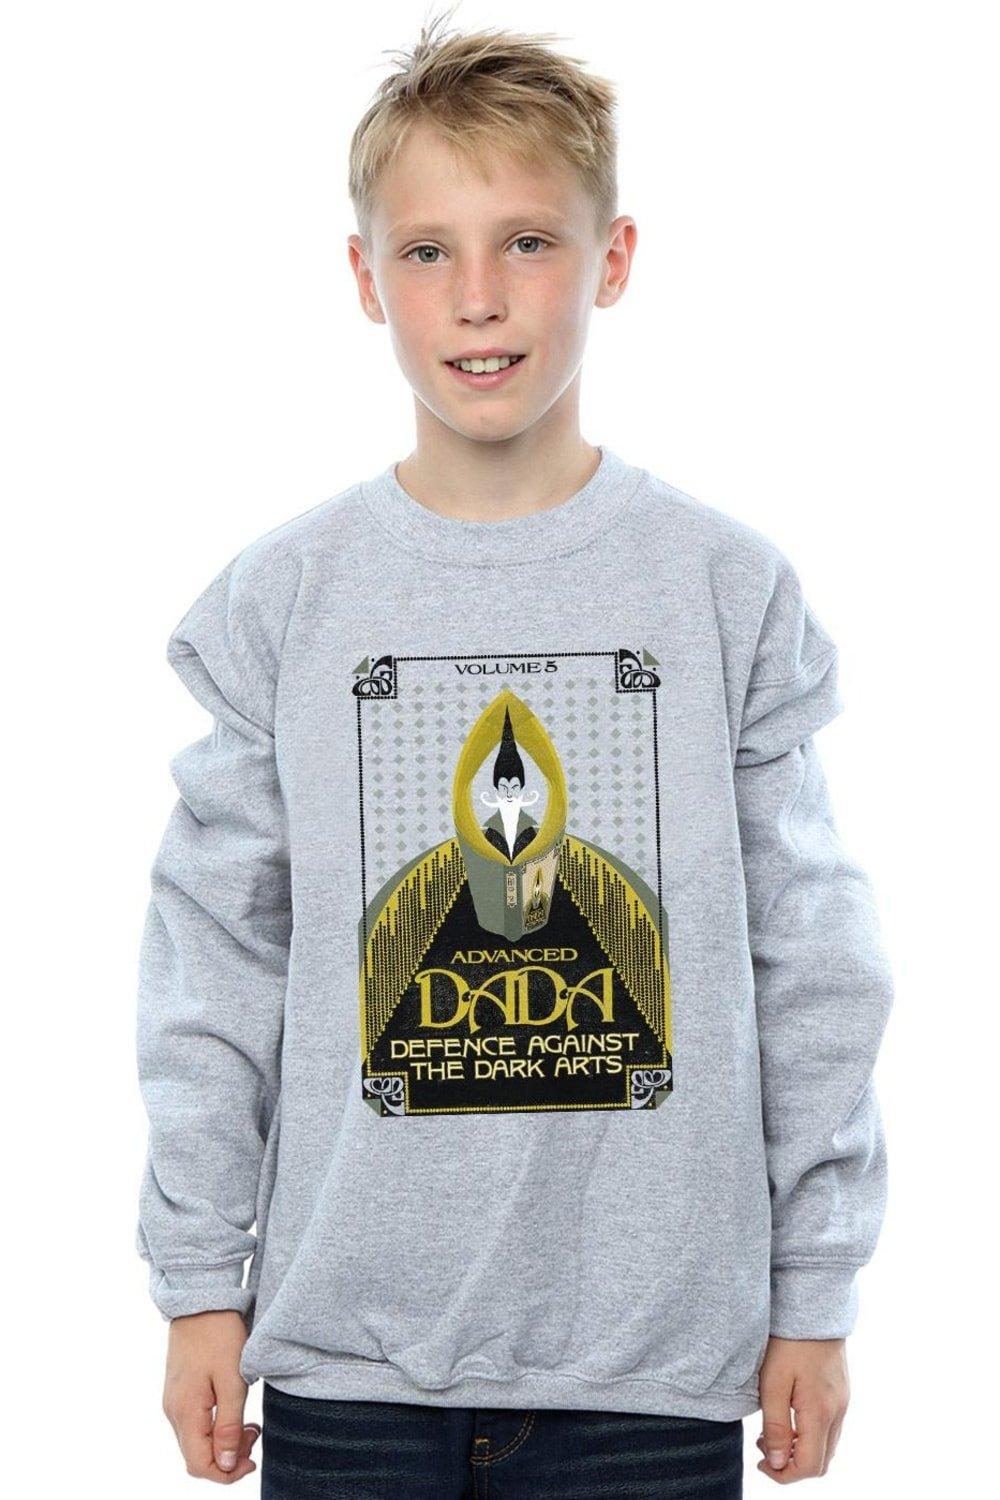 Advanced DADA Sweatshirt